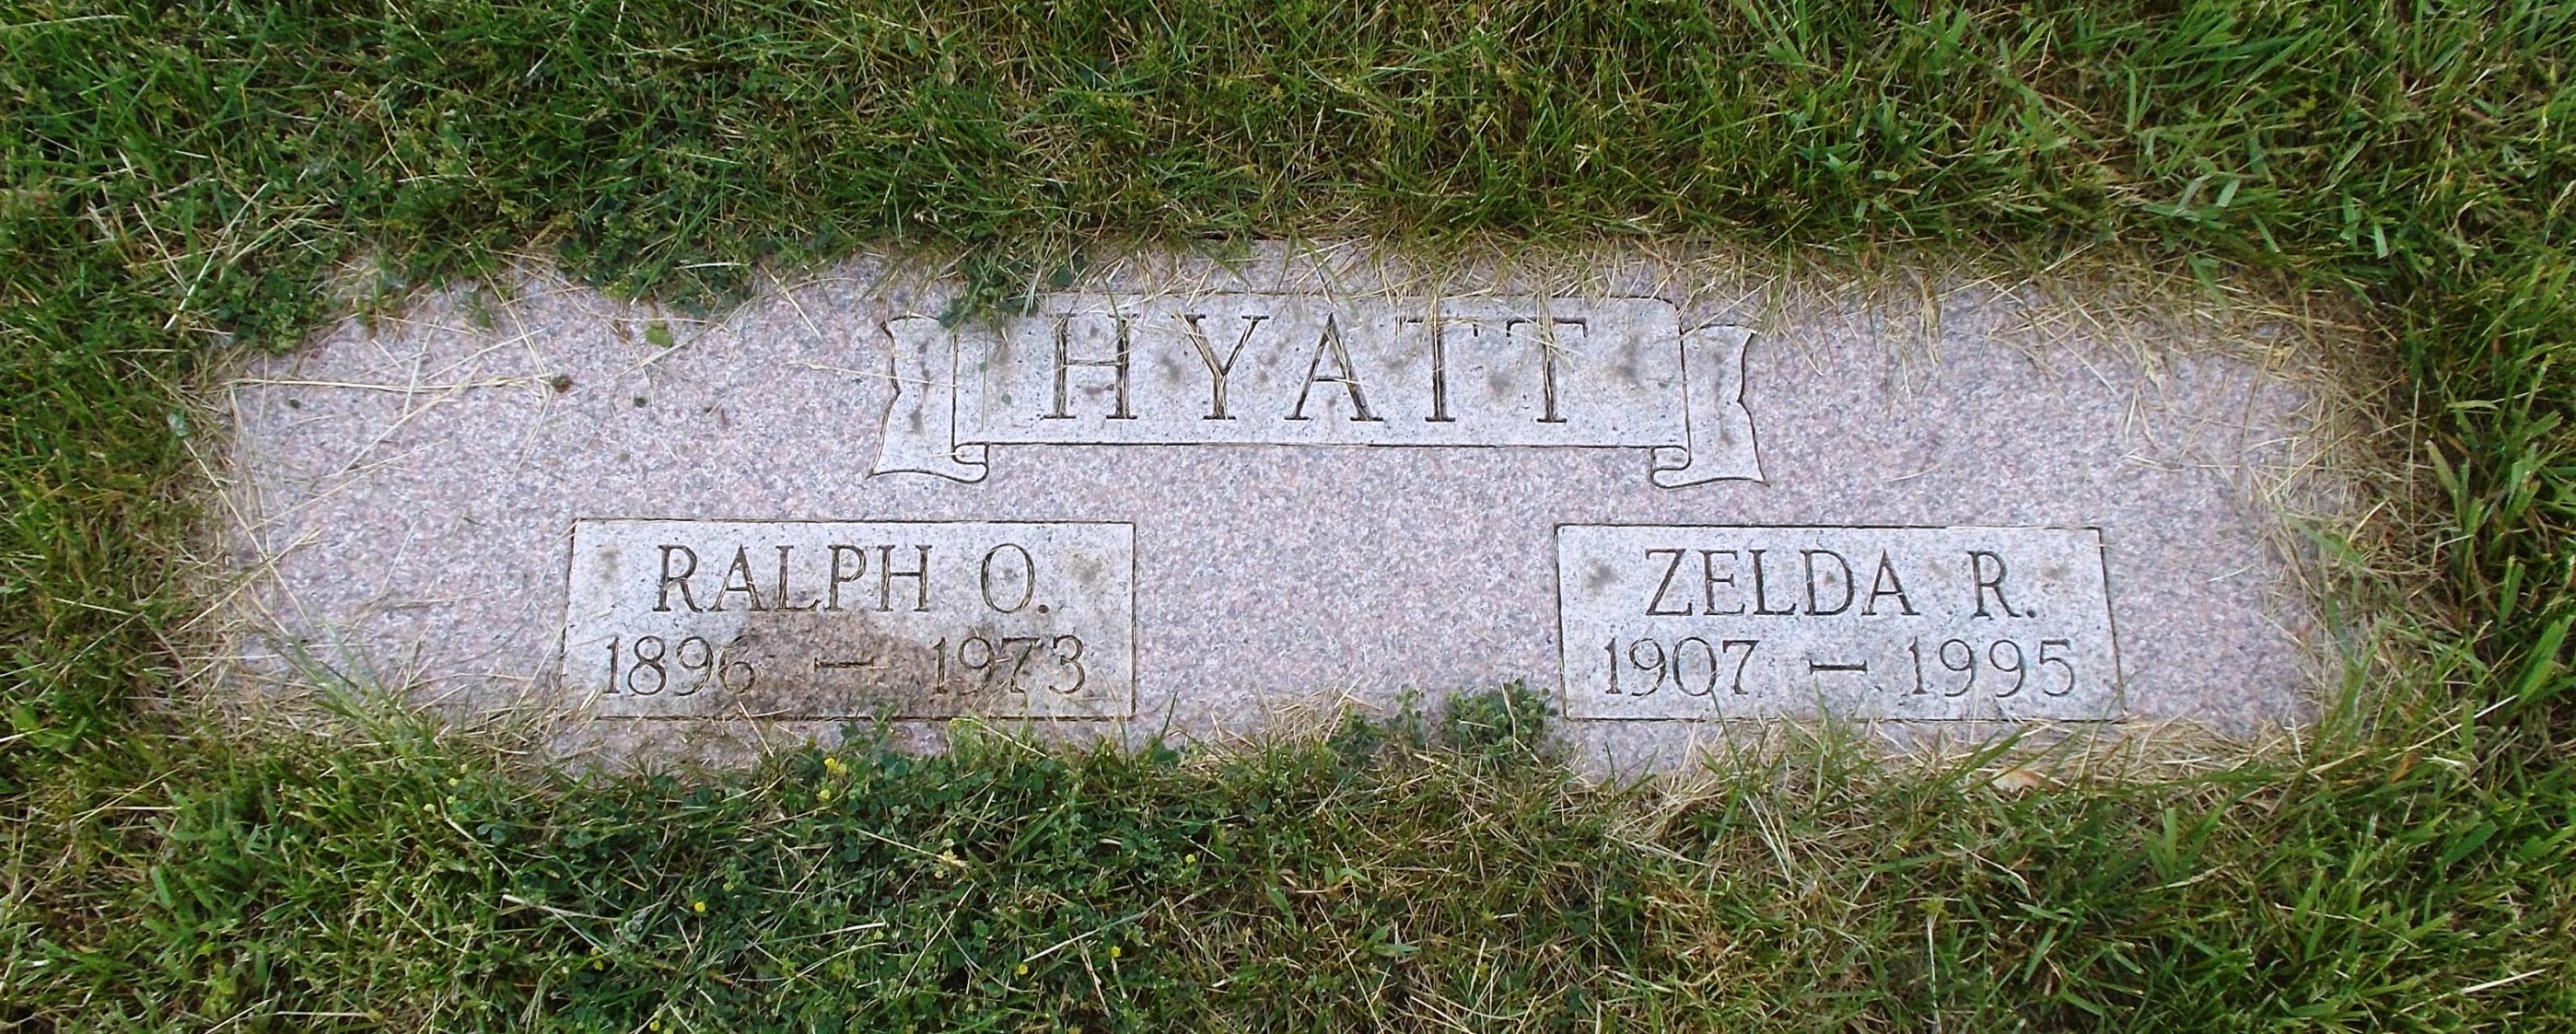 Zelda R Hyatt